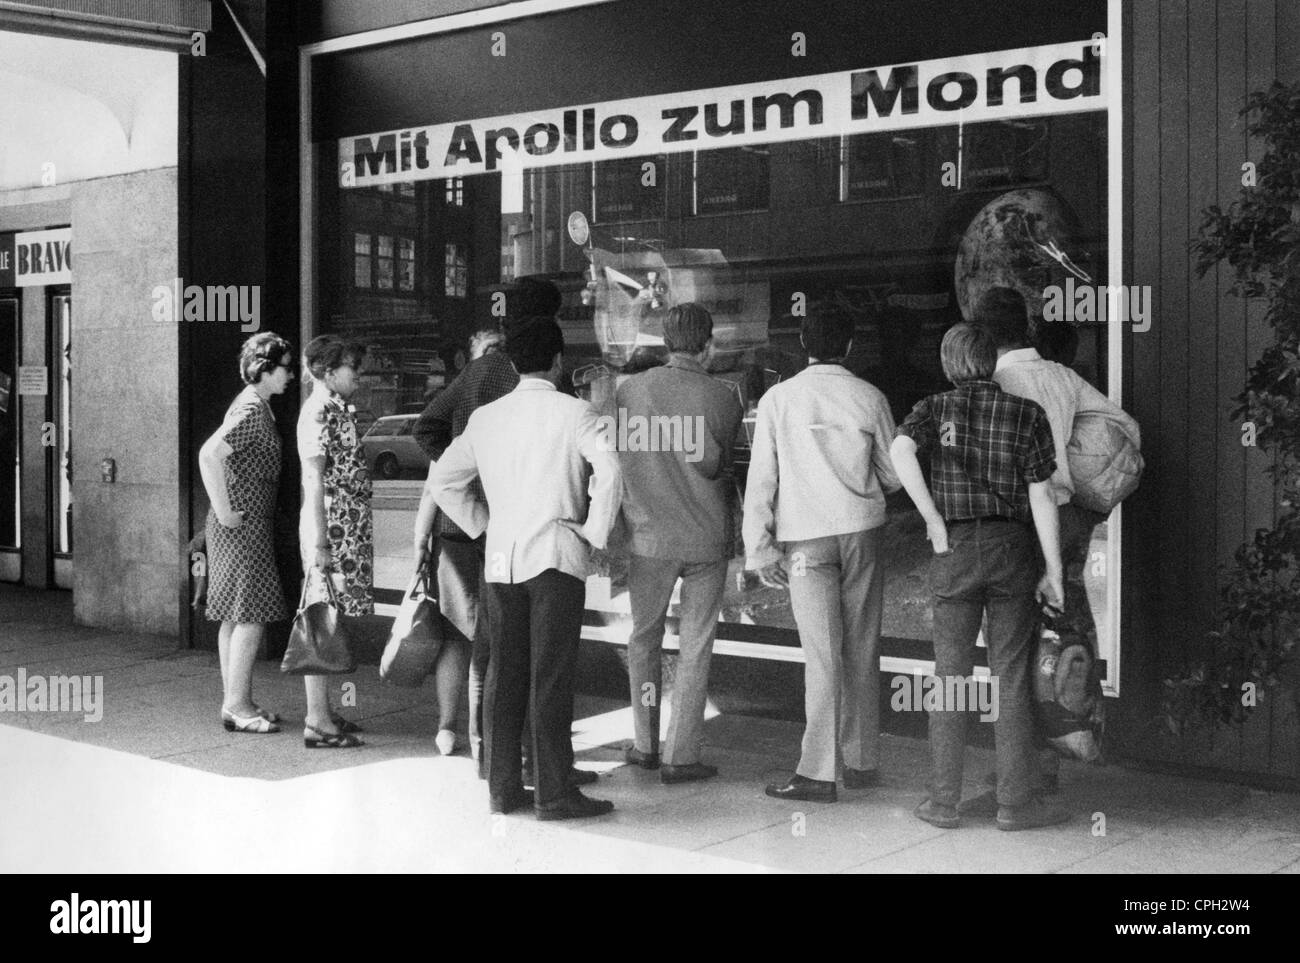 Astronautique, missions, Apollo 11, lancement, personnes regardant le lancement sur un téléviseur dans une fenêtre d'exposition, Hambourg, 16.7.1969, 'Mit Apollo zum Mond' (avec Apollo à la Lune), droits additionnels-Clearences-non disponible Banque D'Images